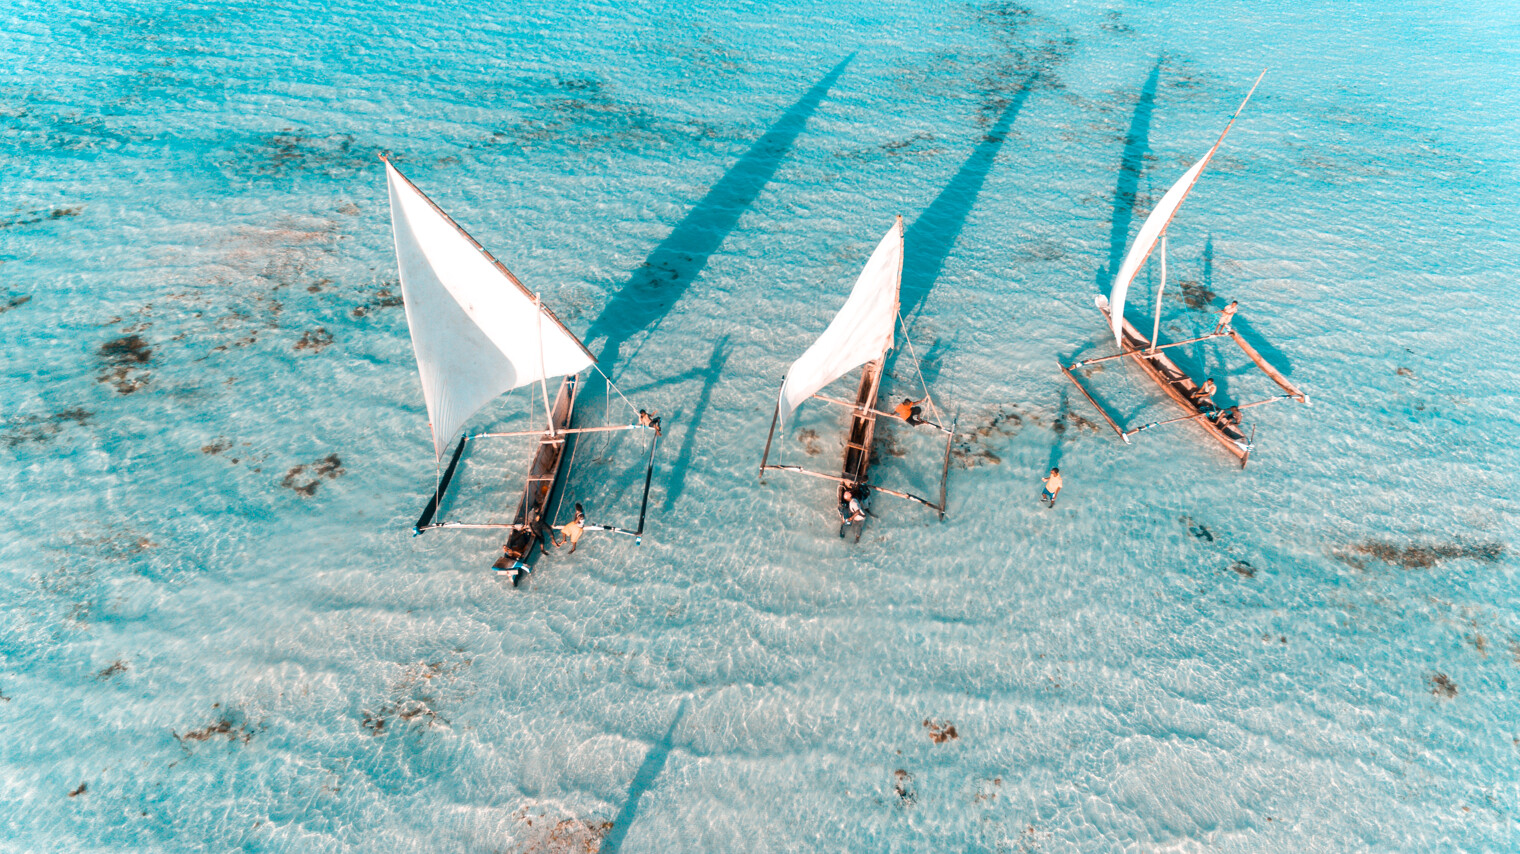 Vue aérienne sur des bateaux typiques de Zanzibar au beau milieu d'eaux turquoise